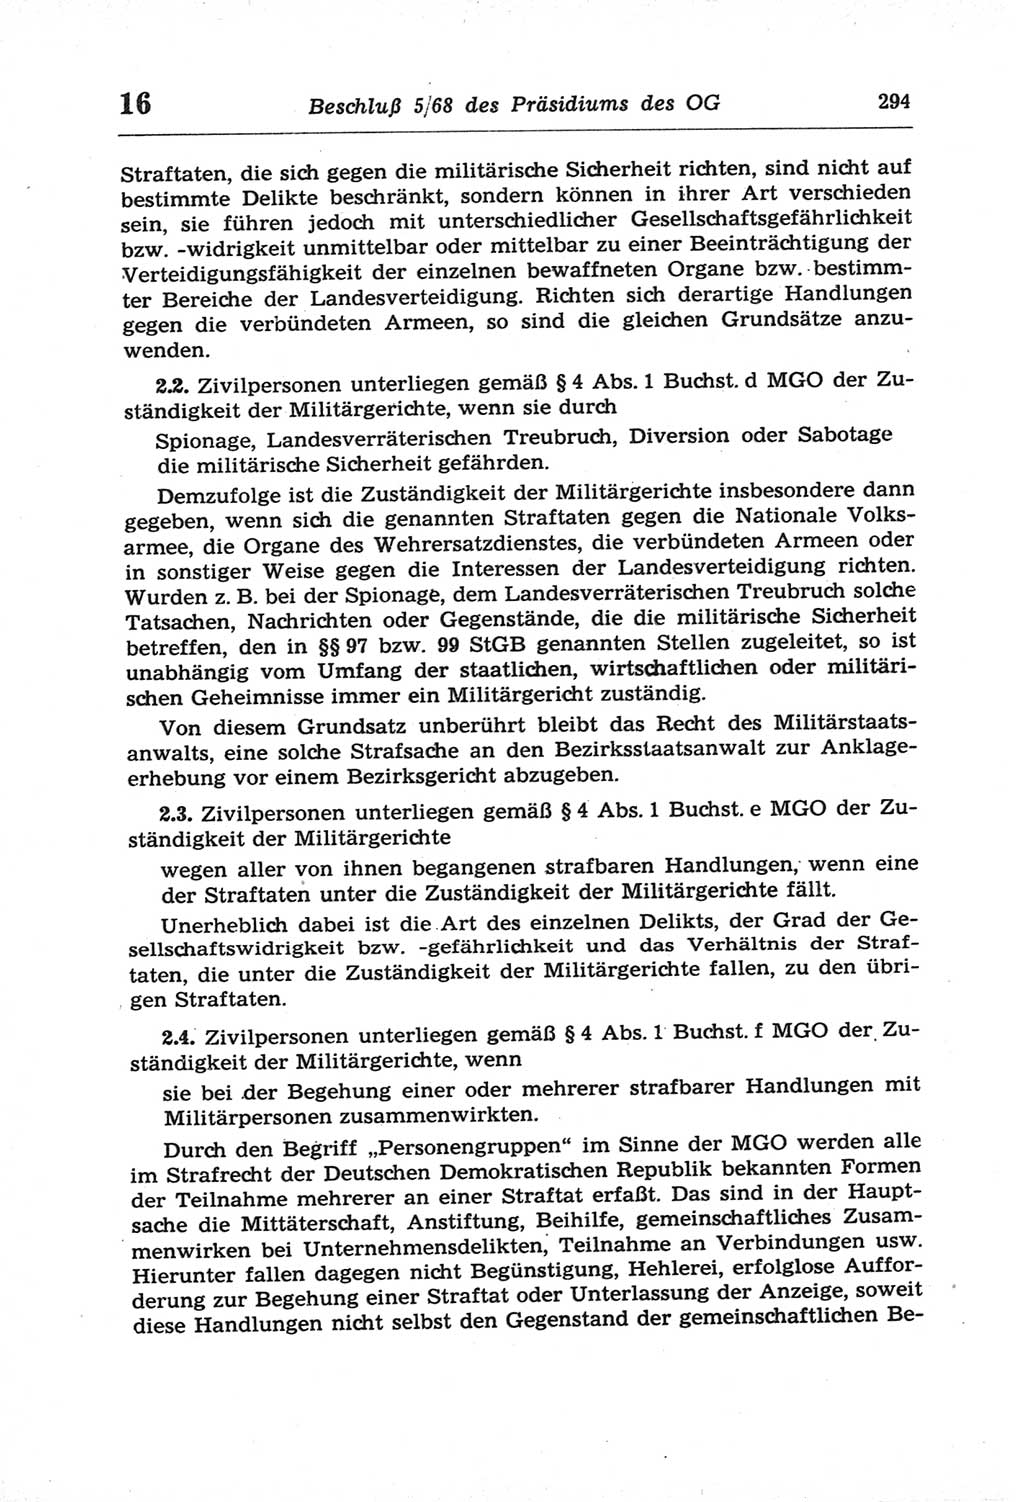 Strafprozeßordnung (StPO) der Deutschen Demokratischen Republik (DDR) und angrenzende Gesetze und Bestimmungen 1968, Seite 294 (StPO Ges. Bstgn. DDR 1968, S. 294)